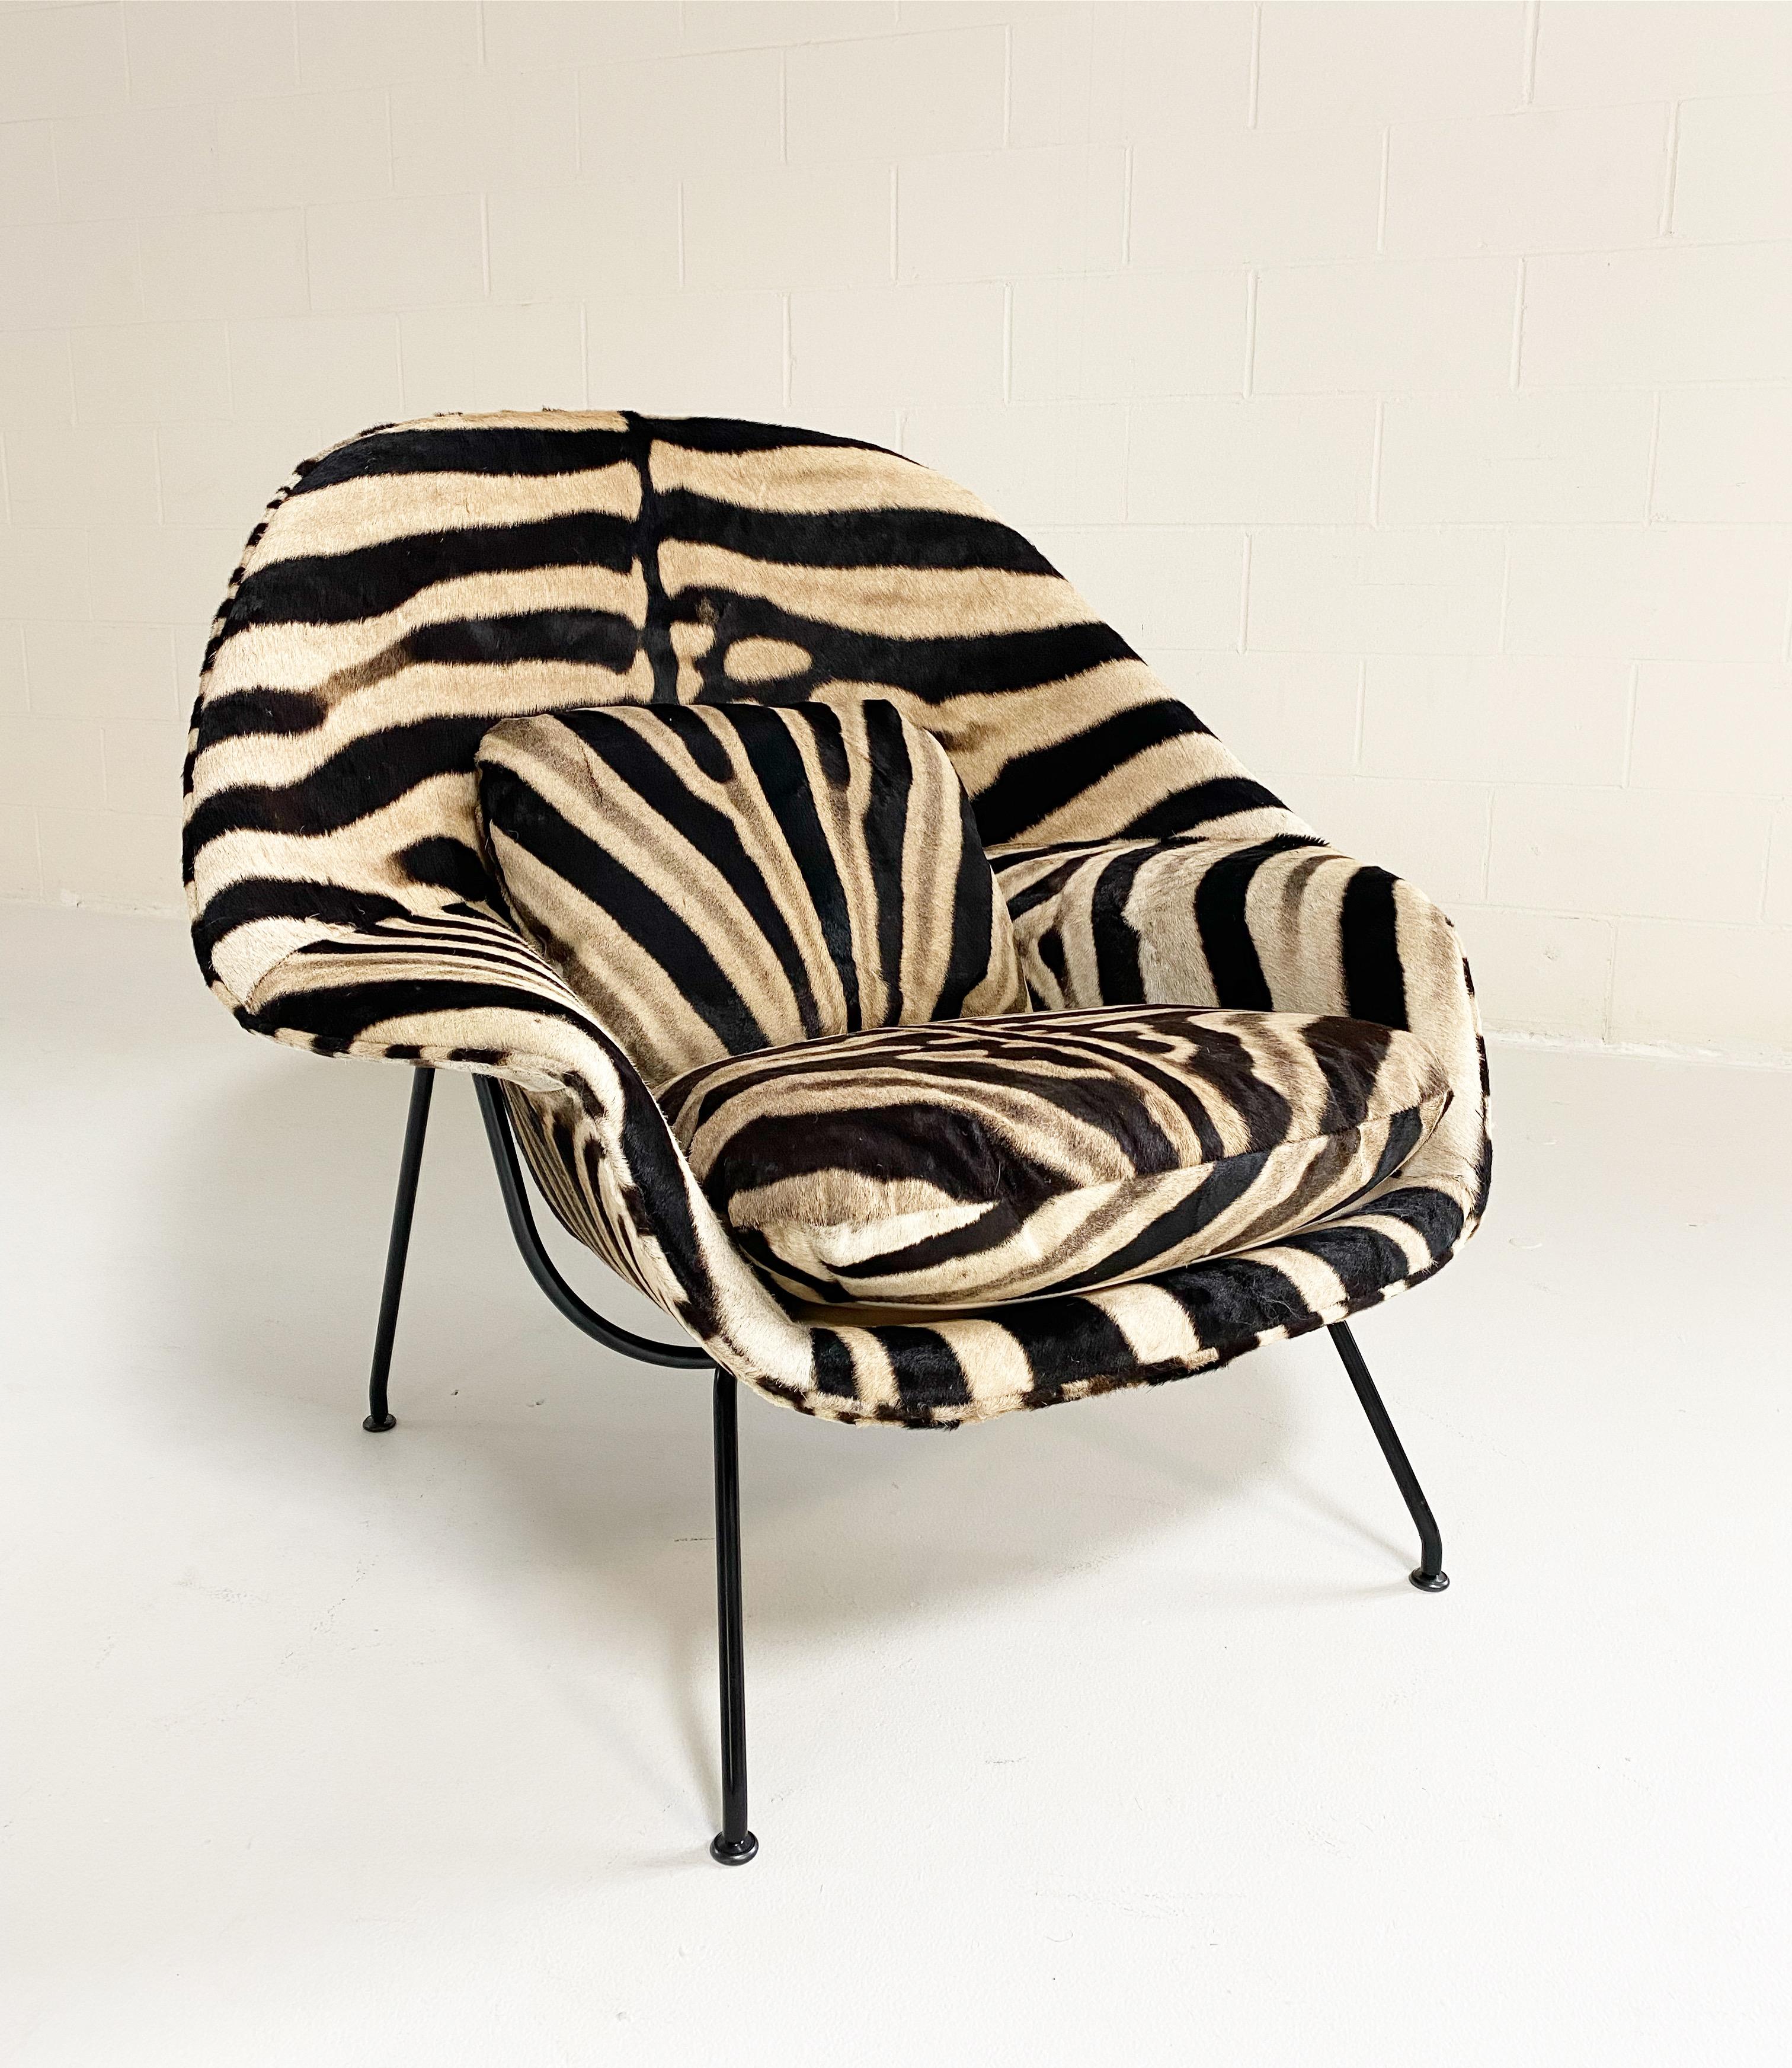 Un des favoris de l'équipe de conception de Forsyth ! Nous avons une incroyable collection de chaises vintage et d'icônes du design qui attendent une nouvelle vie. Nos chaises utérines recyclées font partie de nos modèles les plus populaires.